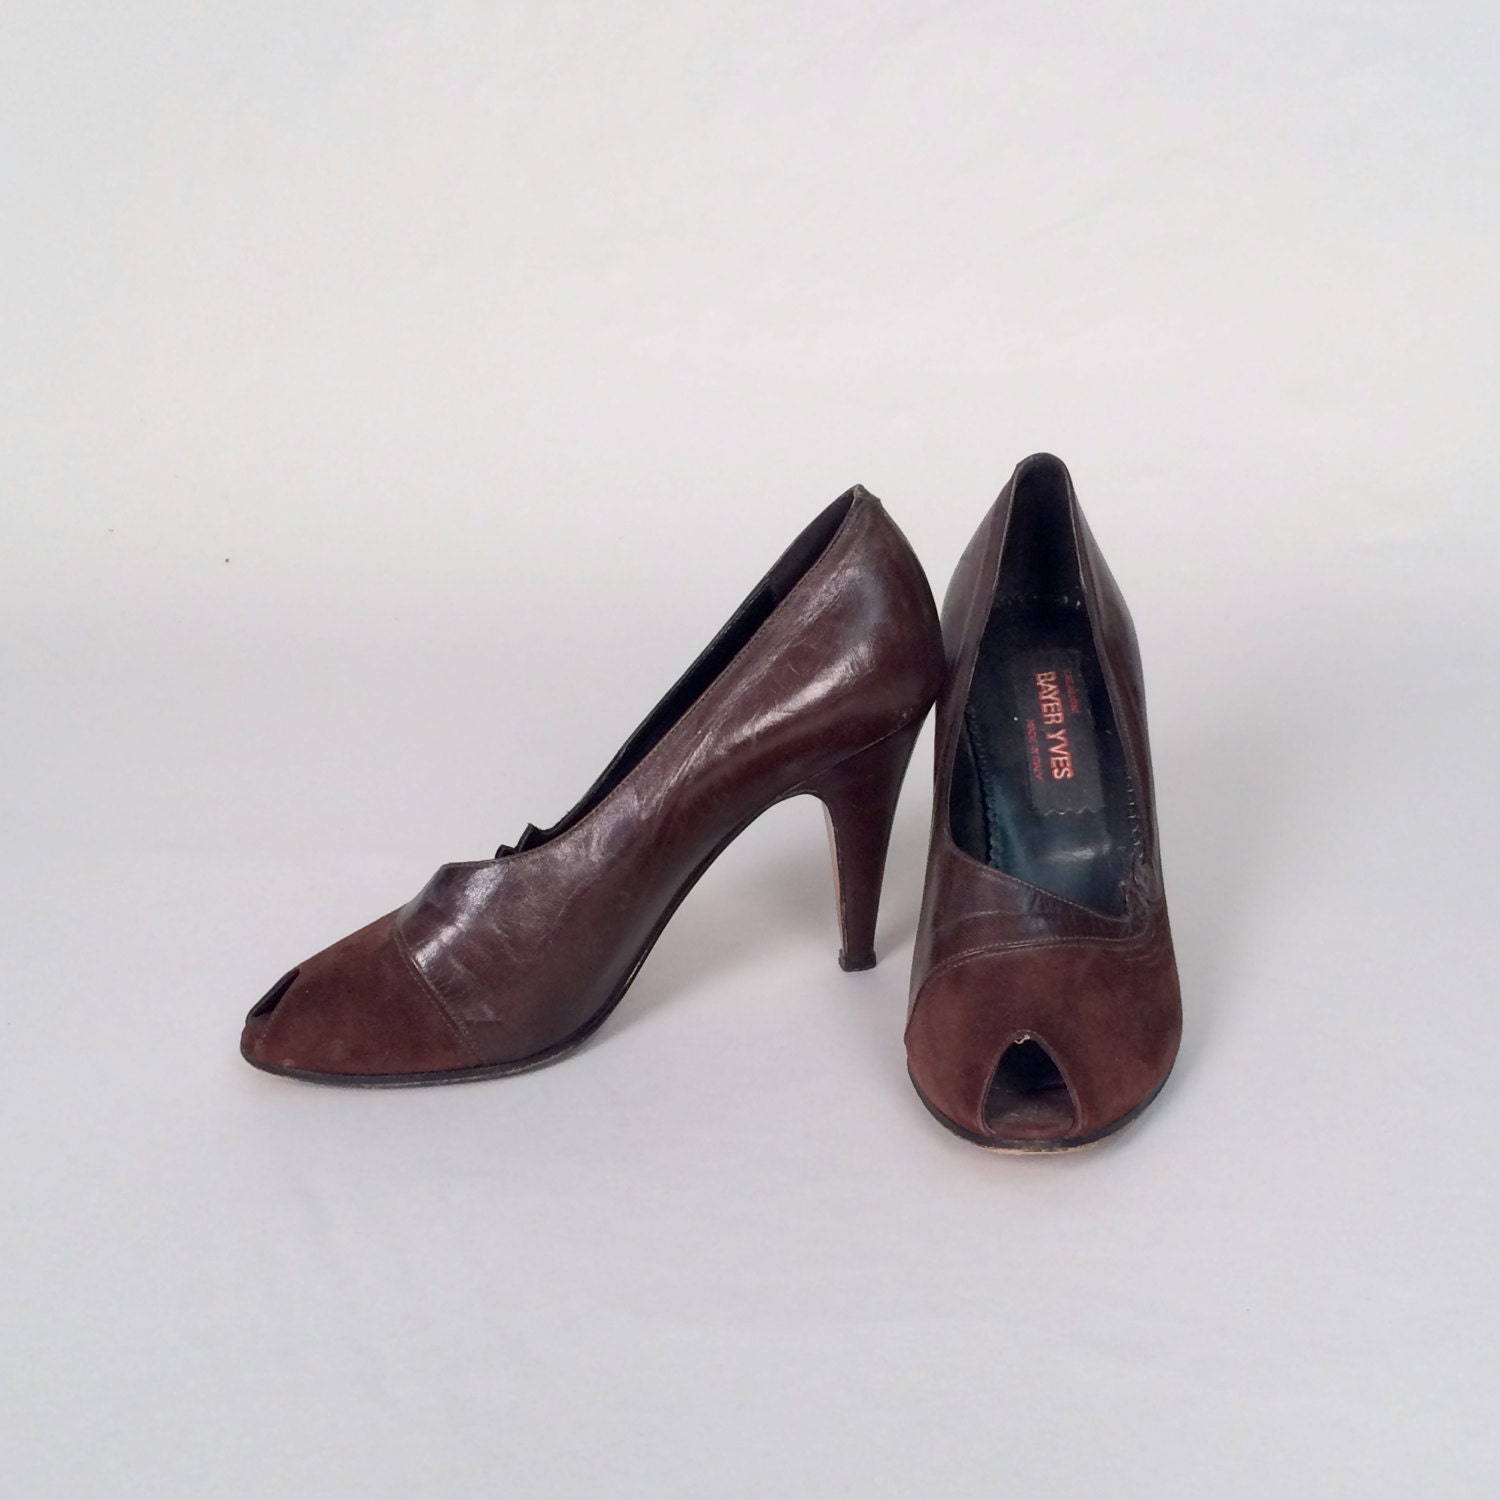 1950s peep toe heels vintage 50s shoes burgundy suede